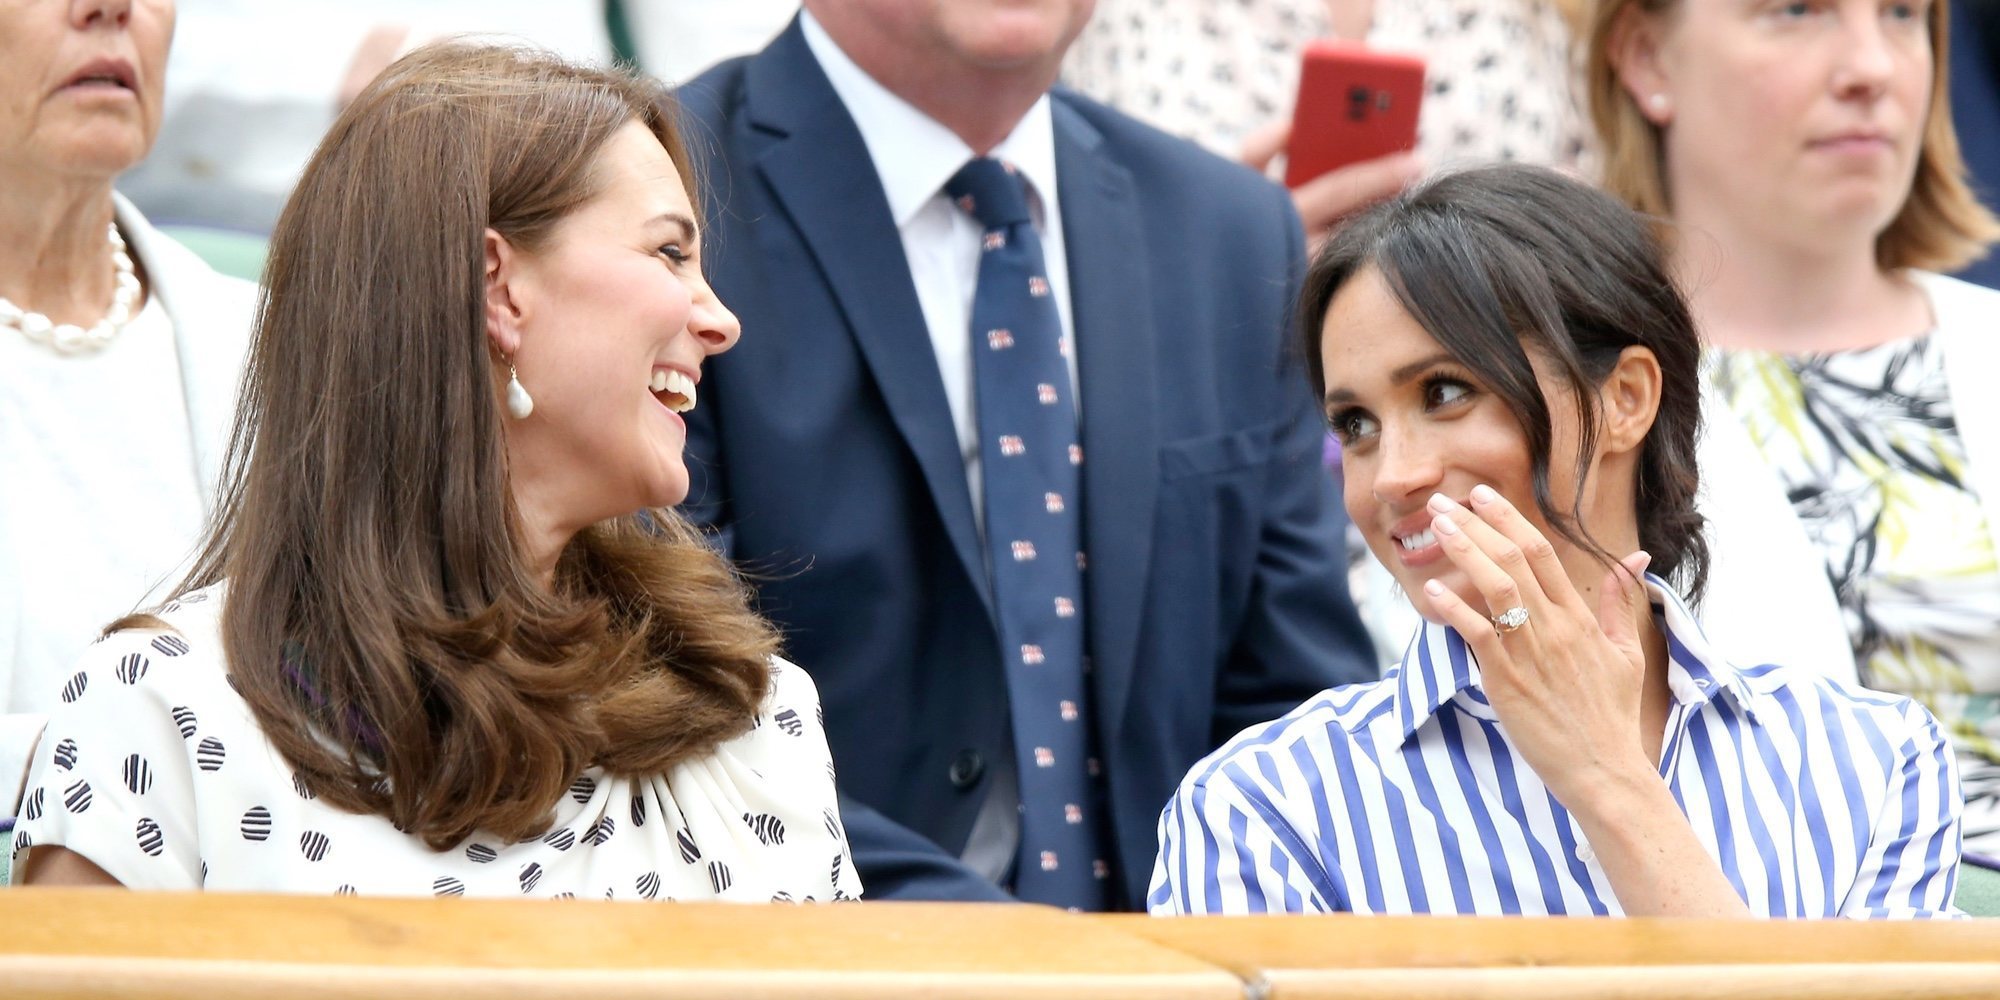 Kate Middleton, emocionada por el bebé que esperan el Príncipe Harry y Meghan Markle